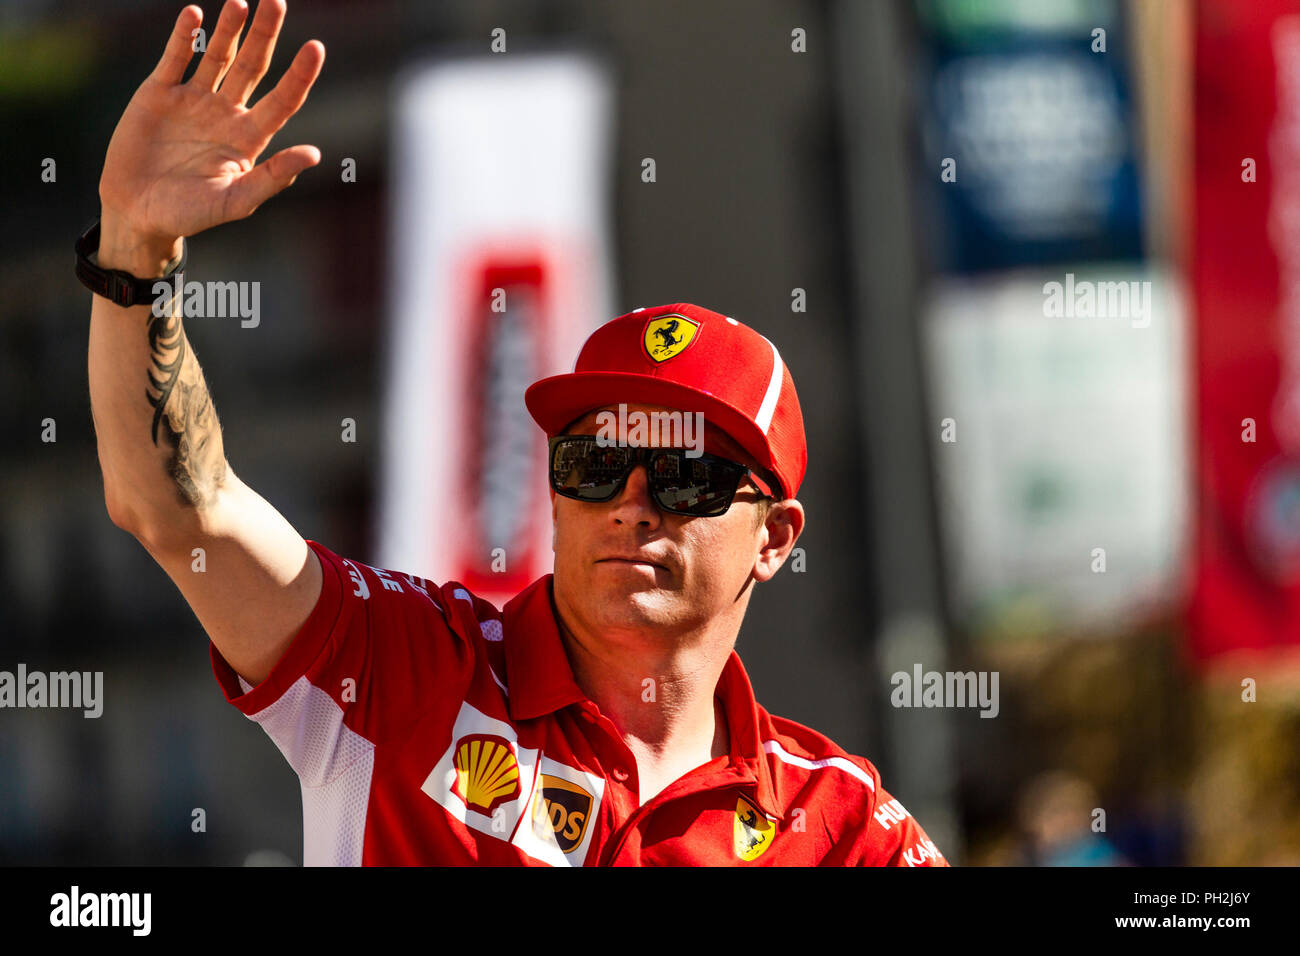 Mailand, Italien, 29. August 2018 - Kimi Räikkönen Ferrari F1 Team begrüßt die Fans während der Taucher Parade an der F1 Mailand Festival - Valeria Portinari Alamy leben Nachrichten Stockfoto